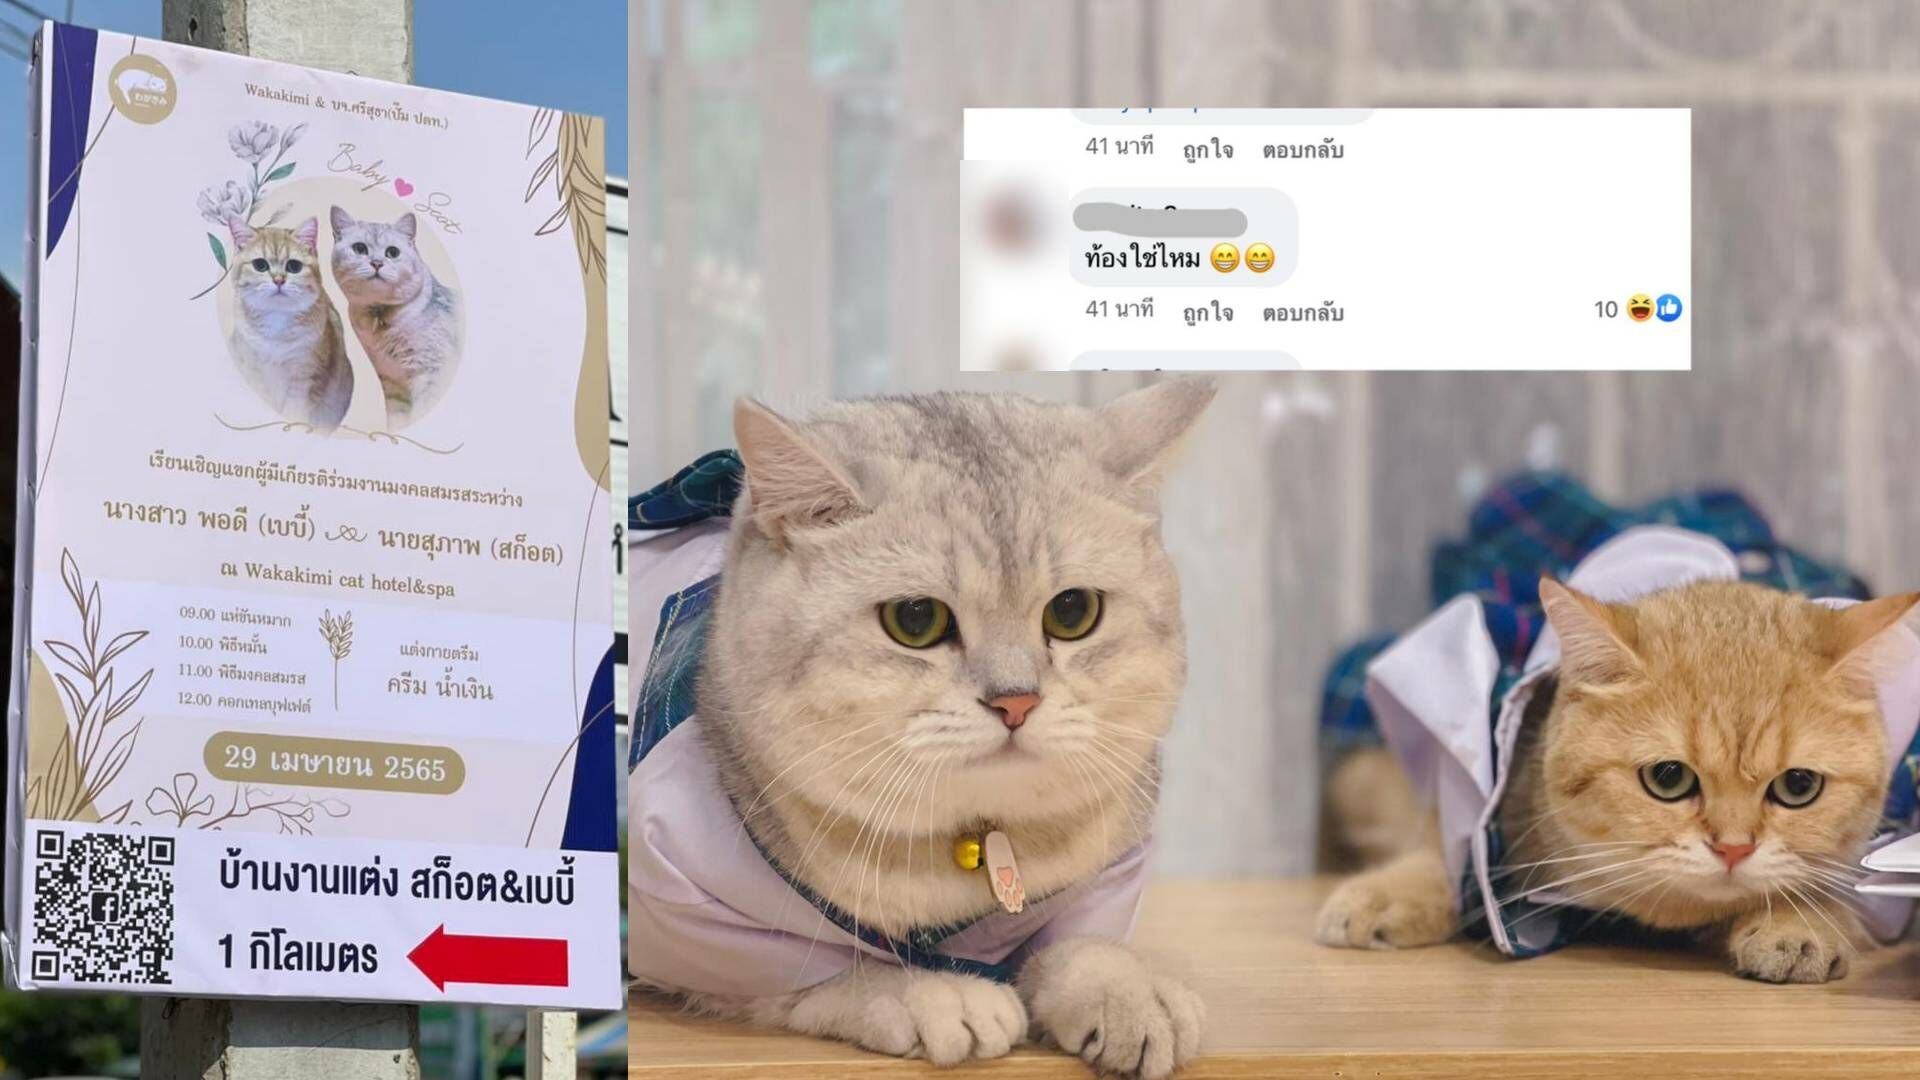 แชร์สนั่น 2 เหมียว ร่อนการ์ดเชิญ แมวแต่งงาน เจ้าของเผยเป็นรักแรกพบ |  Thaiger ข่าวไทย